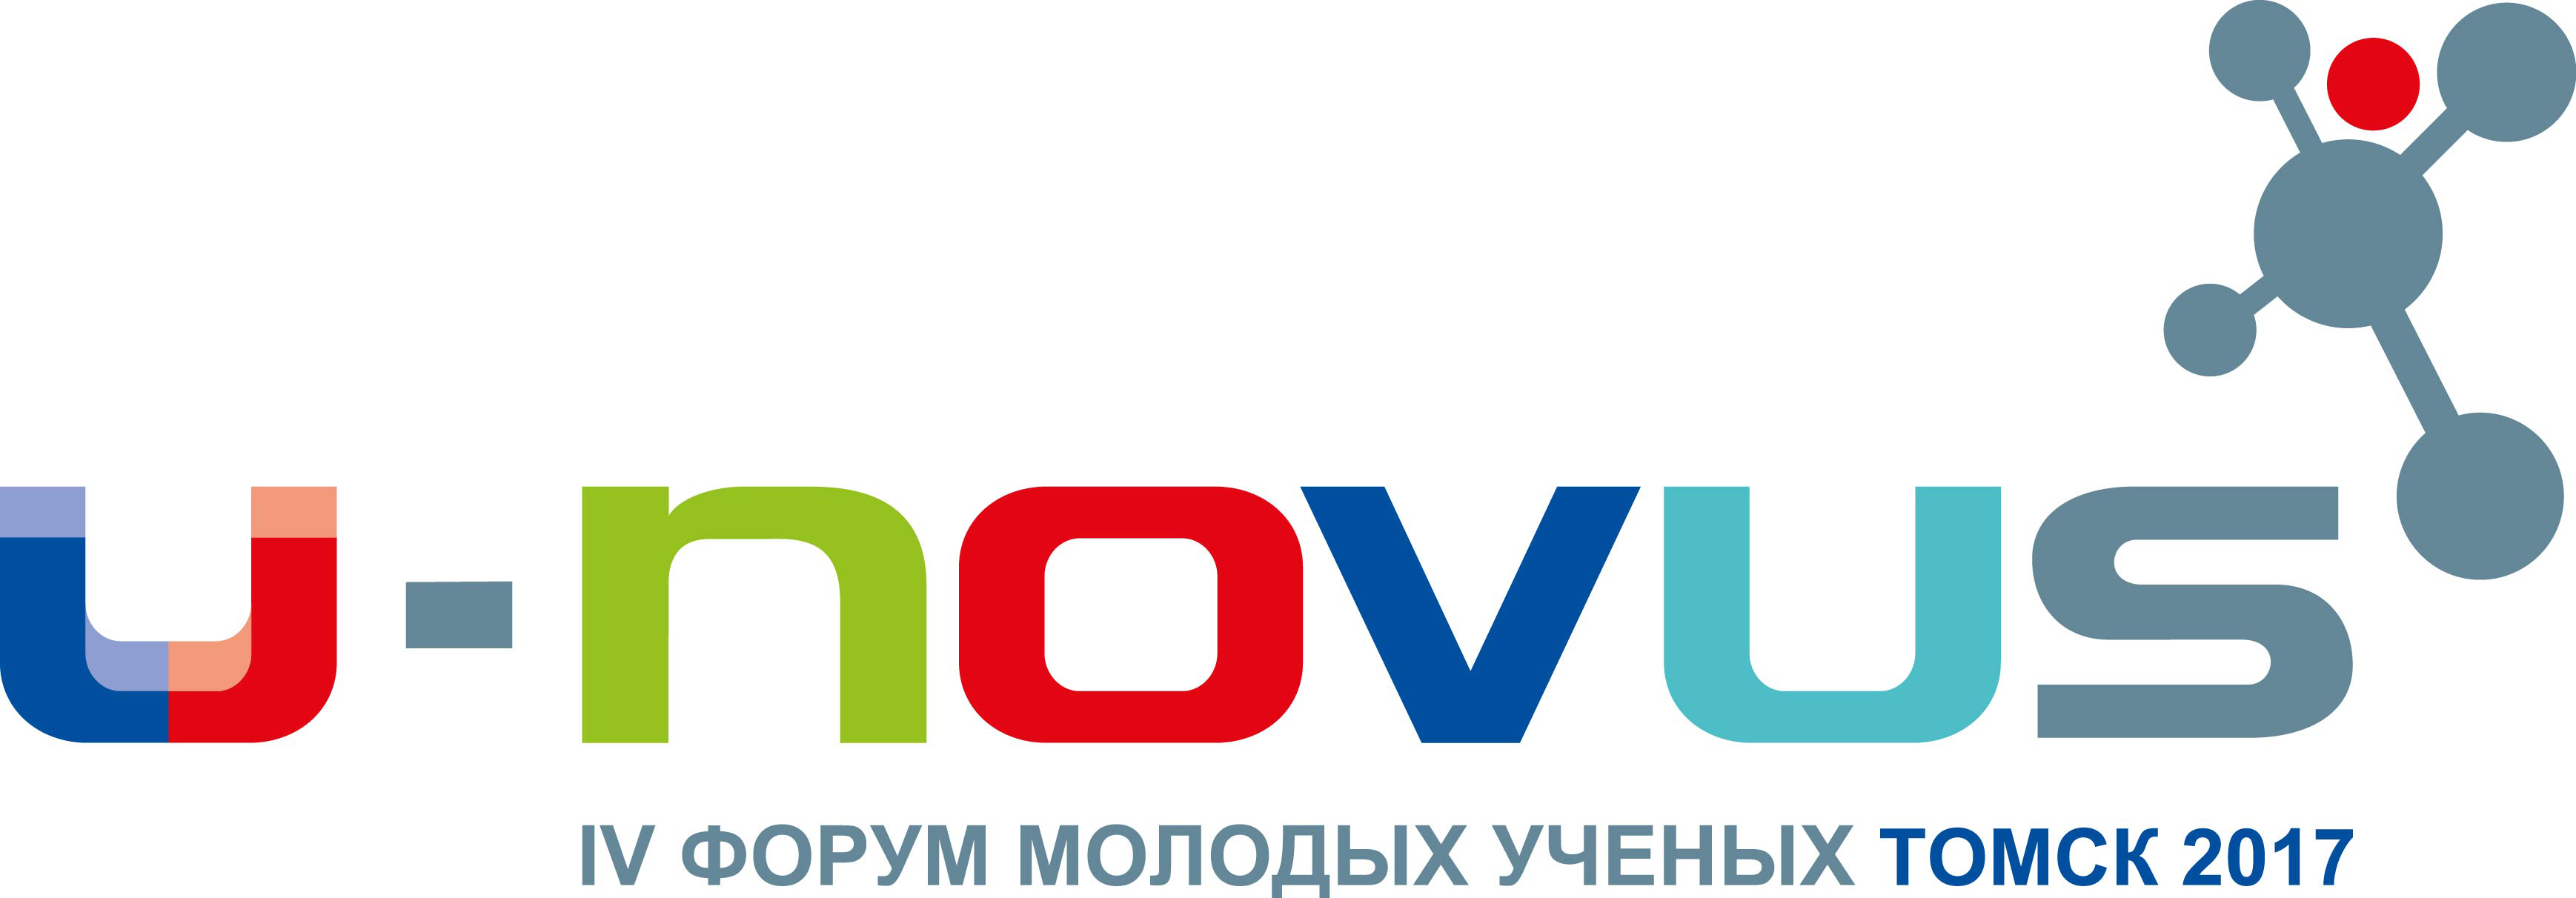 Молодые ученые на U-NOVUS подумали, как реализовать стратегию научно-технологического развития России